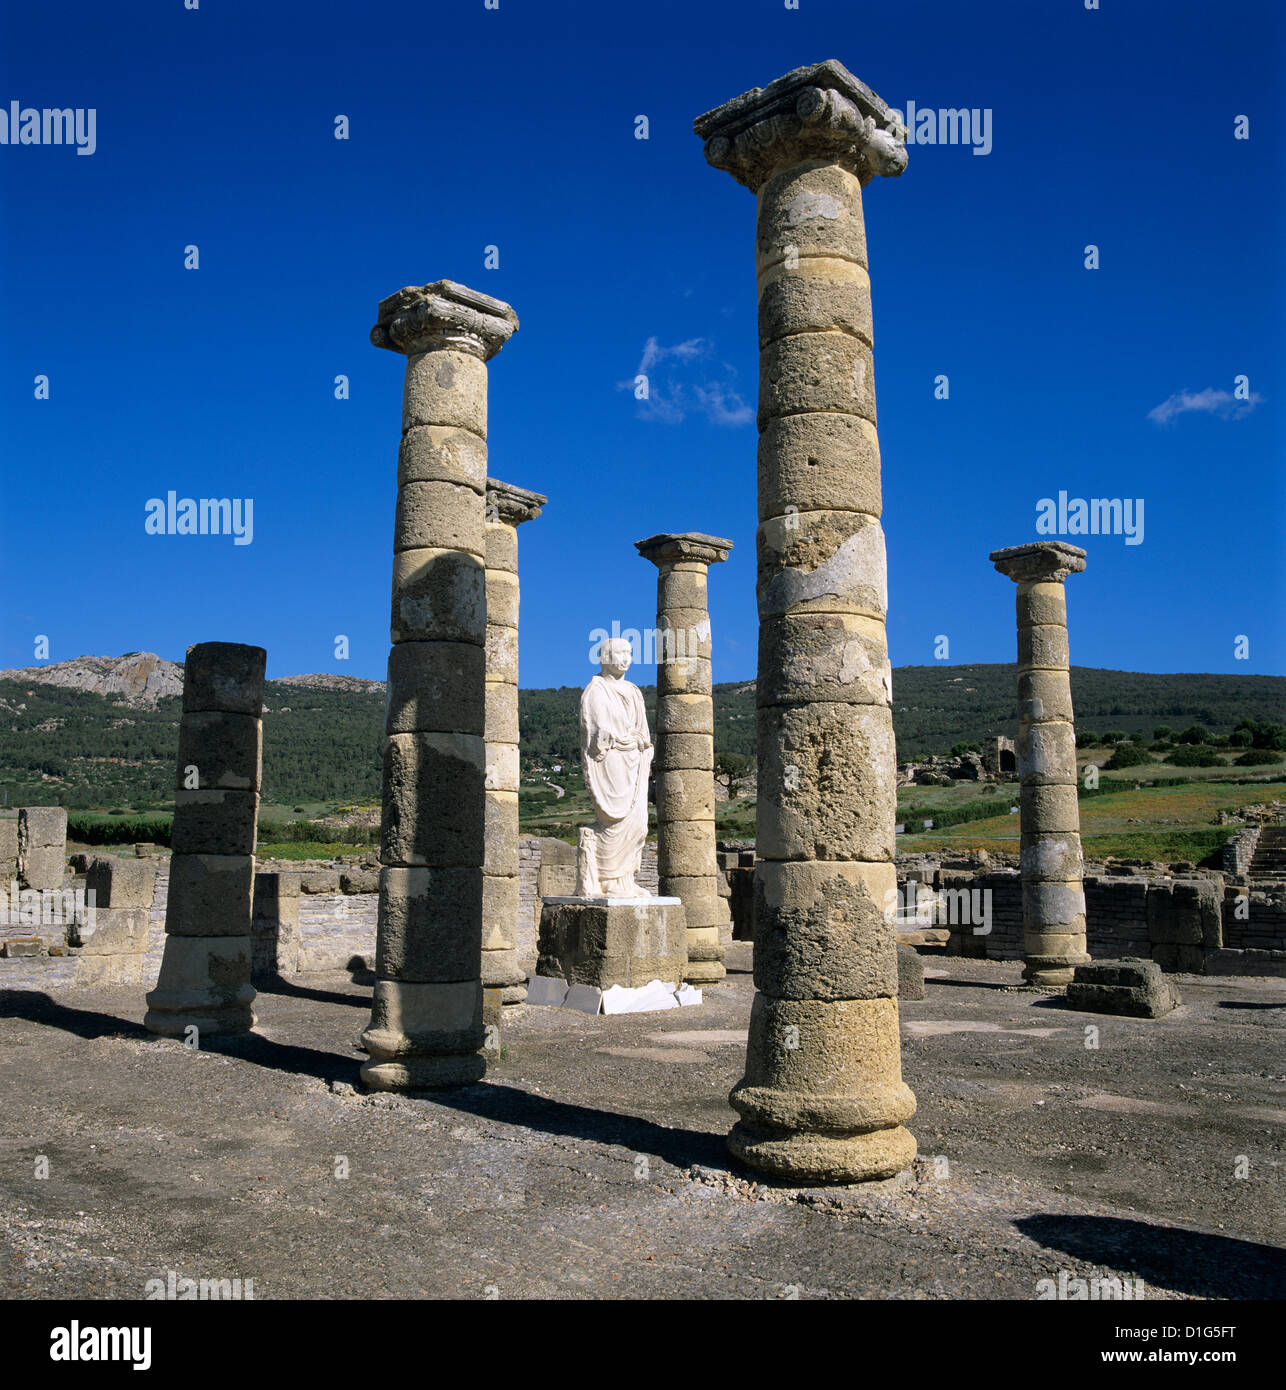 Römische Ruinen mit Statue des Kaisers Trajan, Baelo Claudia, in der Nähe von Tarifa, Andalusien, Spanien, Europa Stockfoto